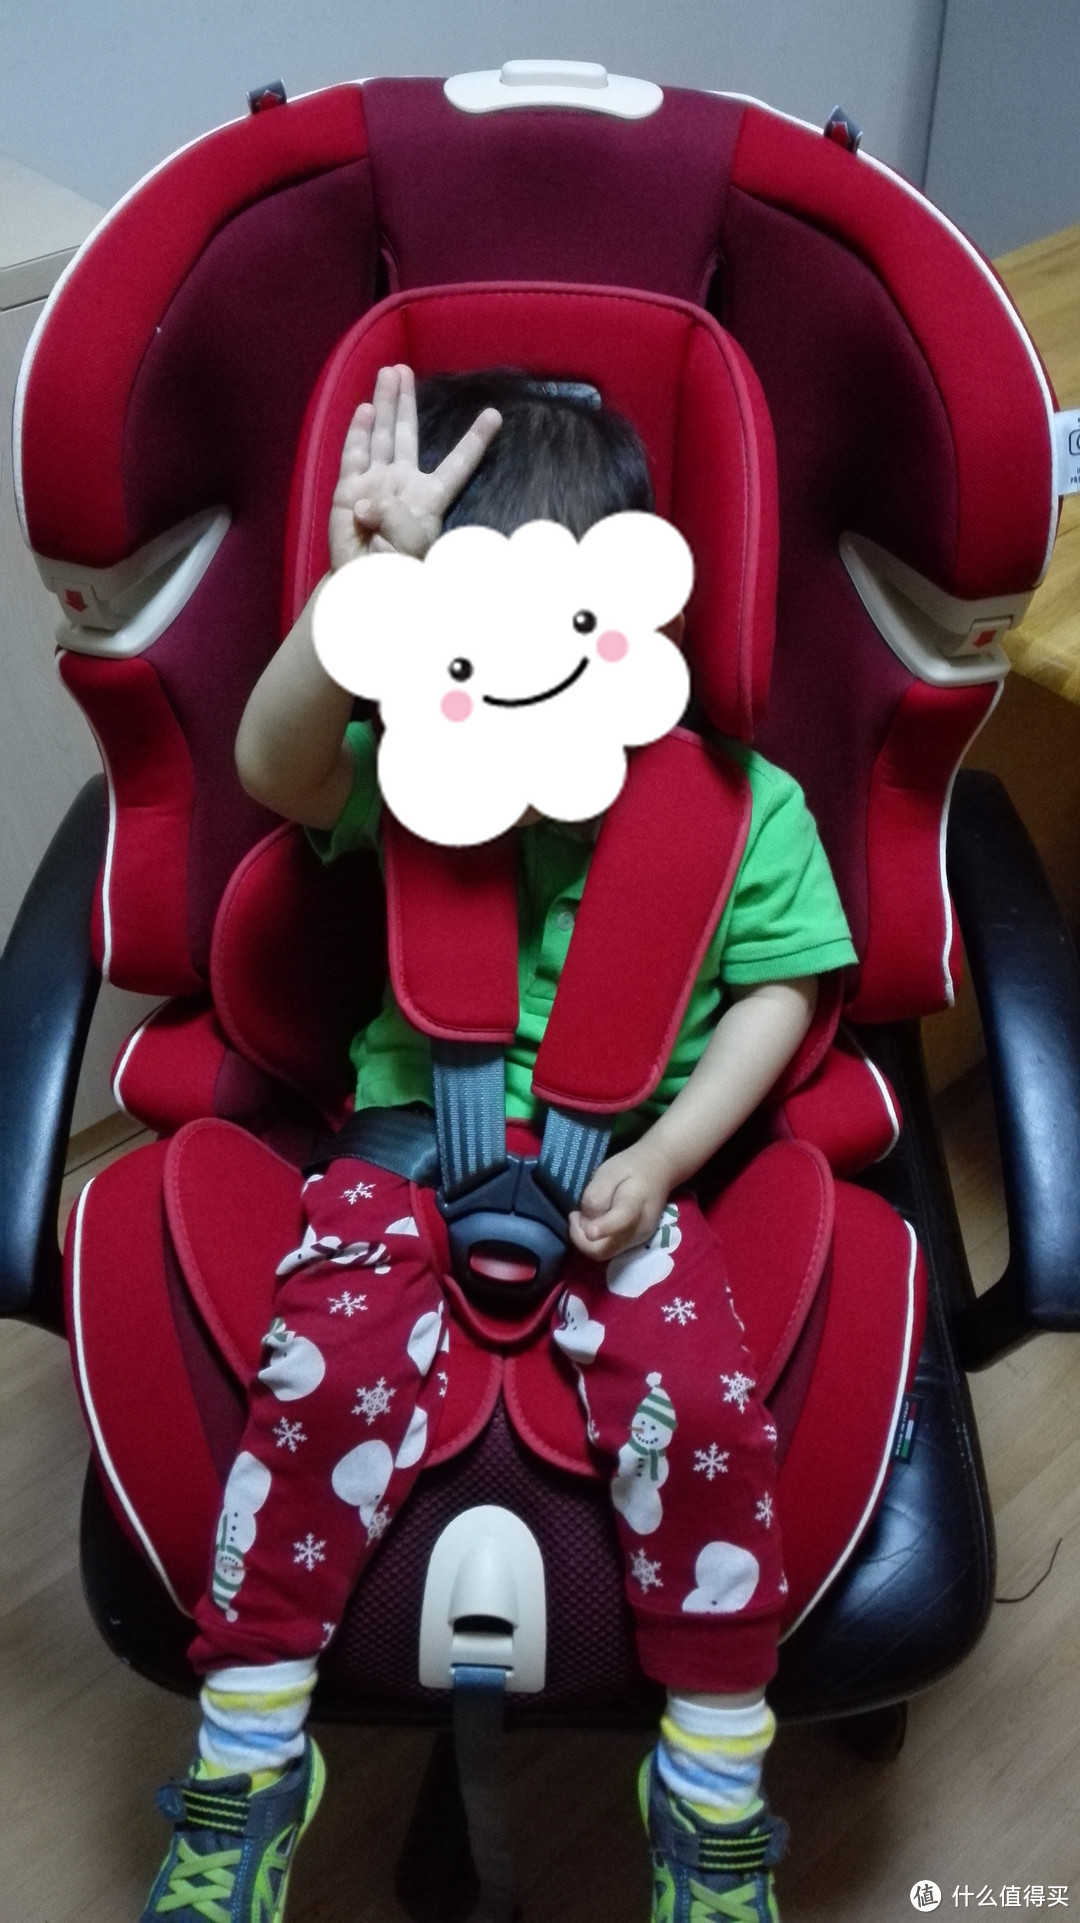 来自意大利的儿童安全座椅——kiwy SLF123 Q-Fix 2016 儿童安全座椅